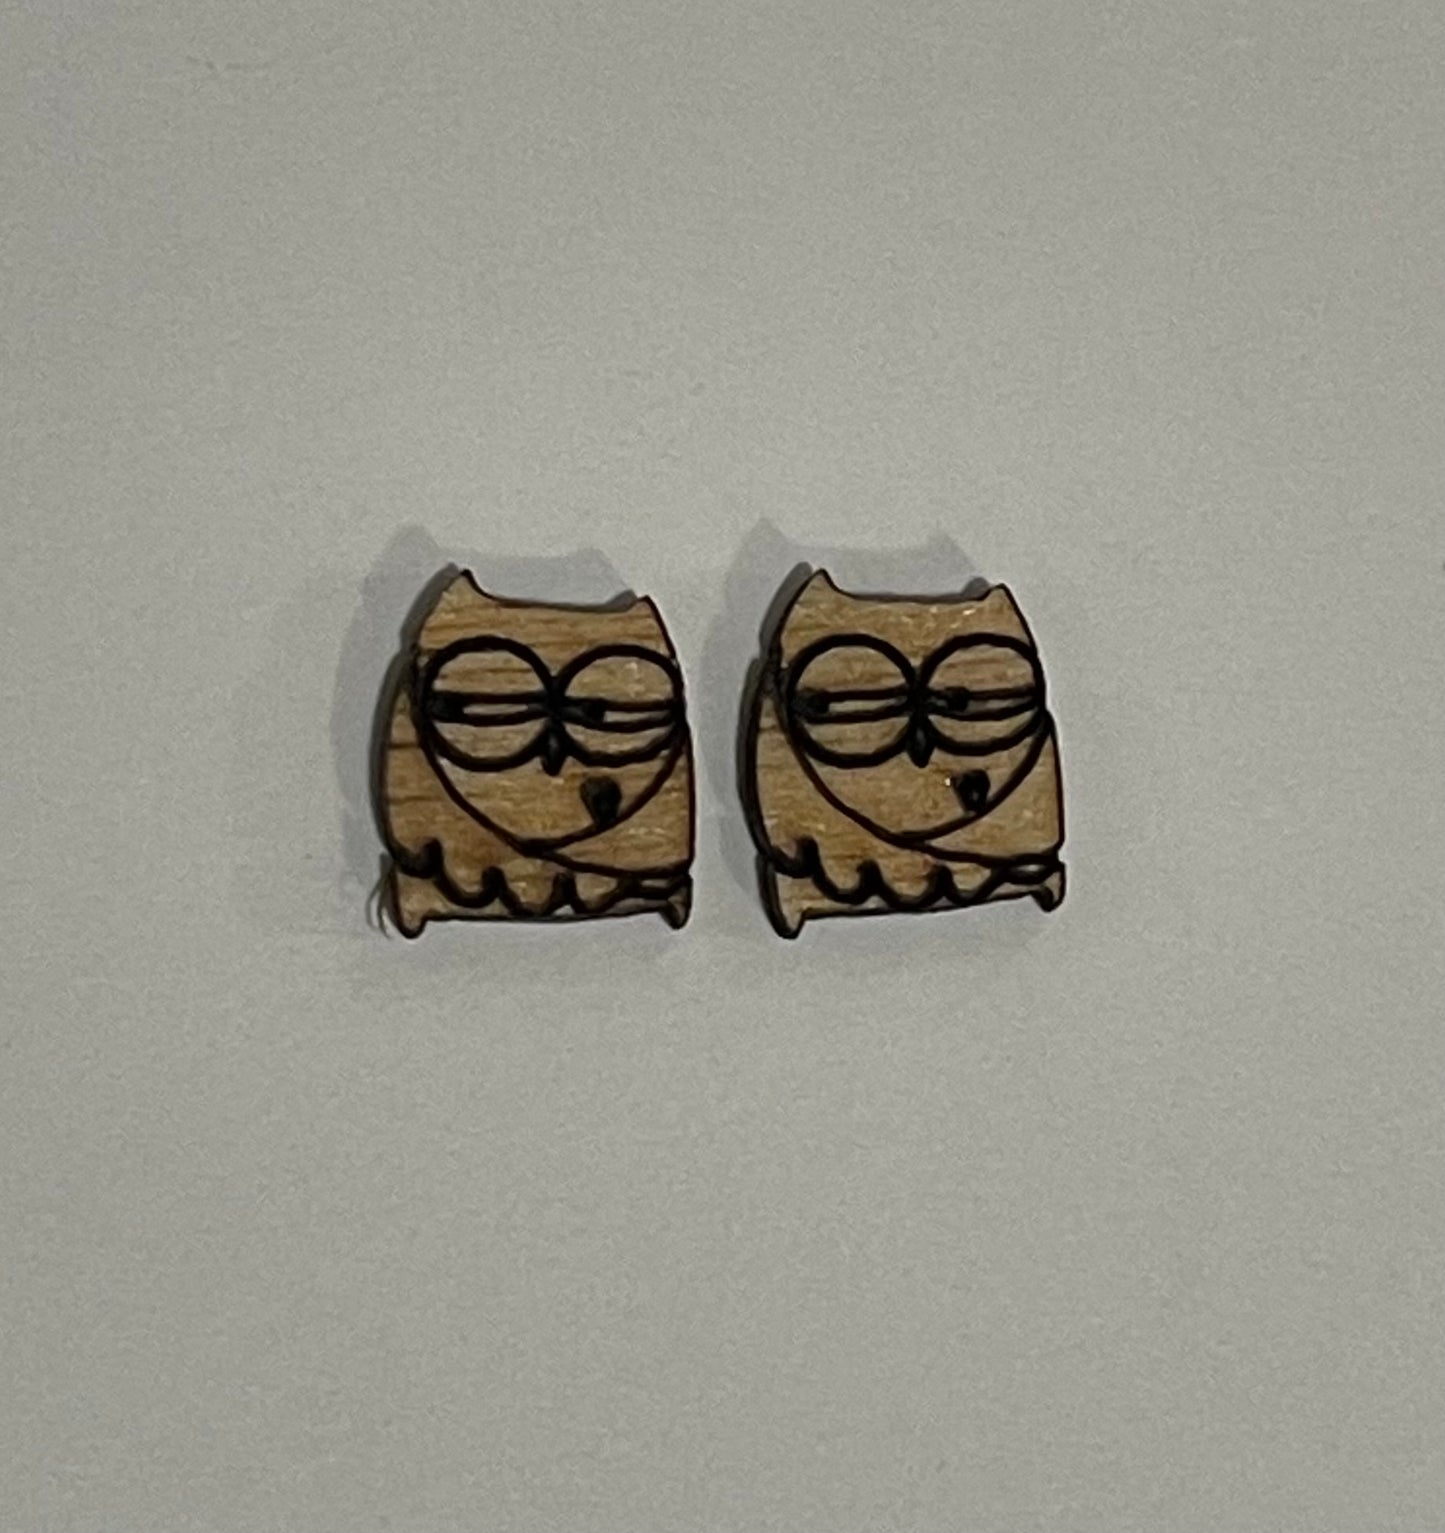 Owl Blank Wood Stud Earrings. DIY jewelry. Unfinished laser cut wood jewelry. Wood earring blanks. Unfinished wood earrings. Wood jewelry blanks.